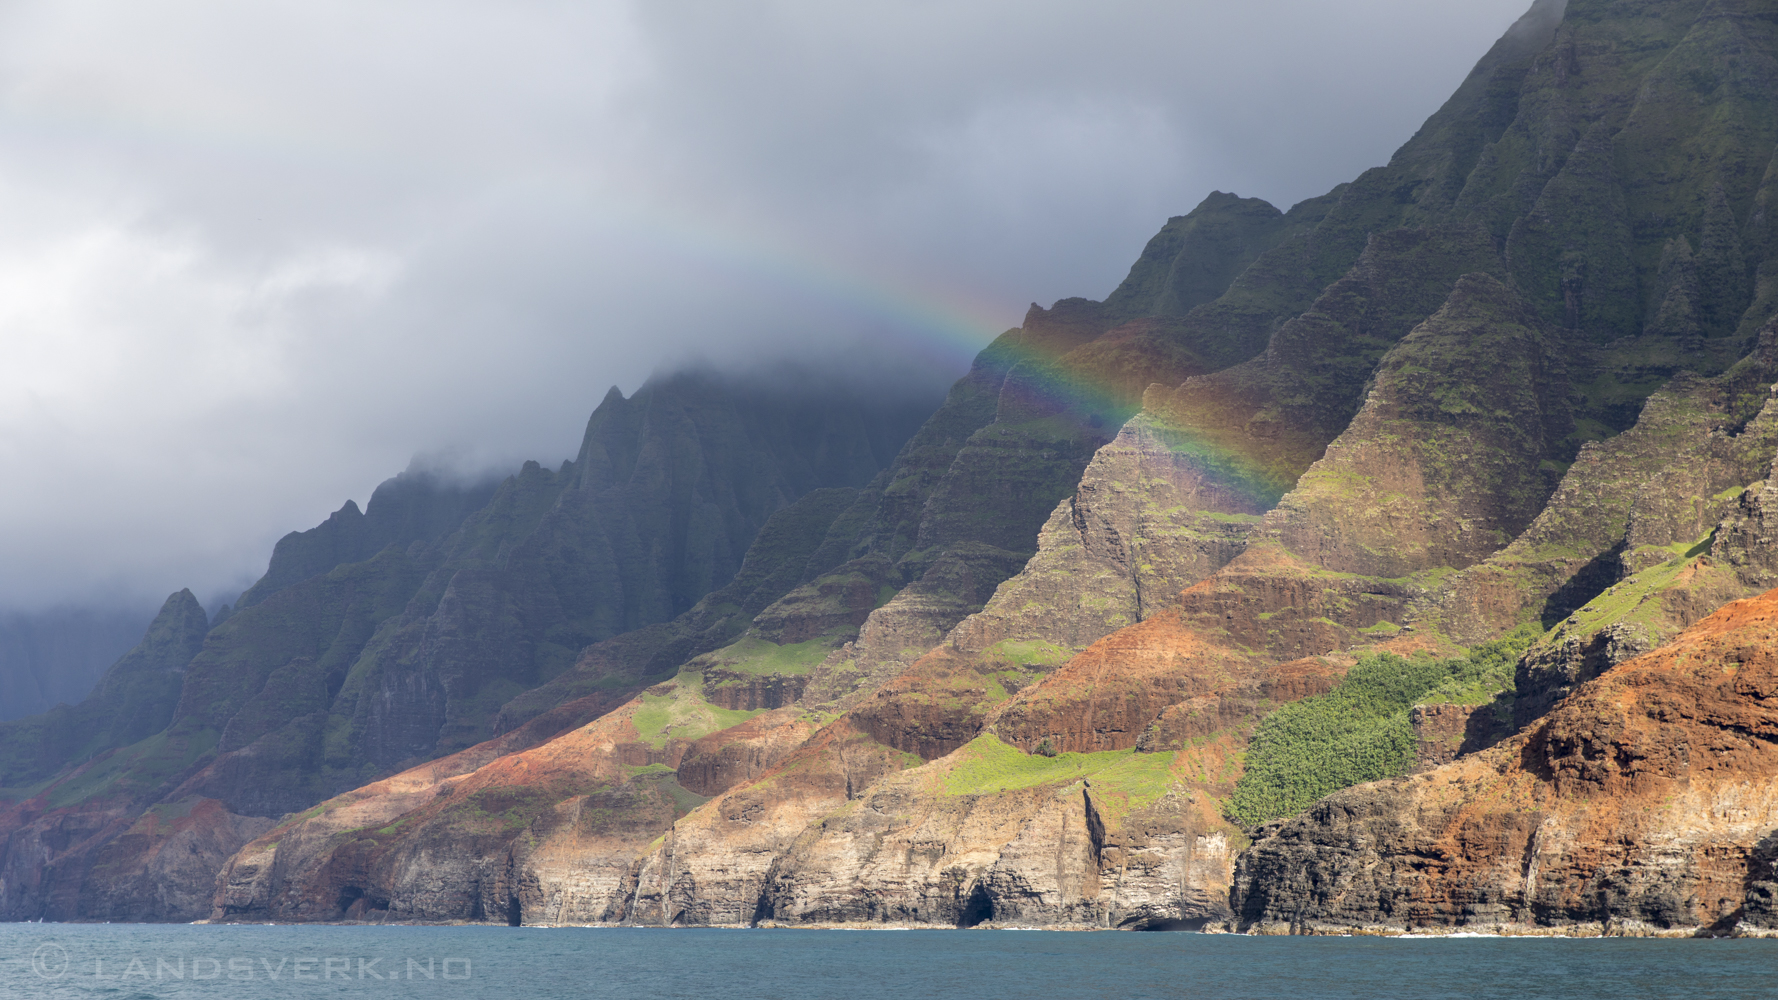 Nā Pali Coast. Kauai, Hawaii. 

(Canon EOS 5D Mark IV / Canon EF 24-70mm f/2.8 L II USM)